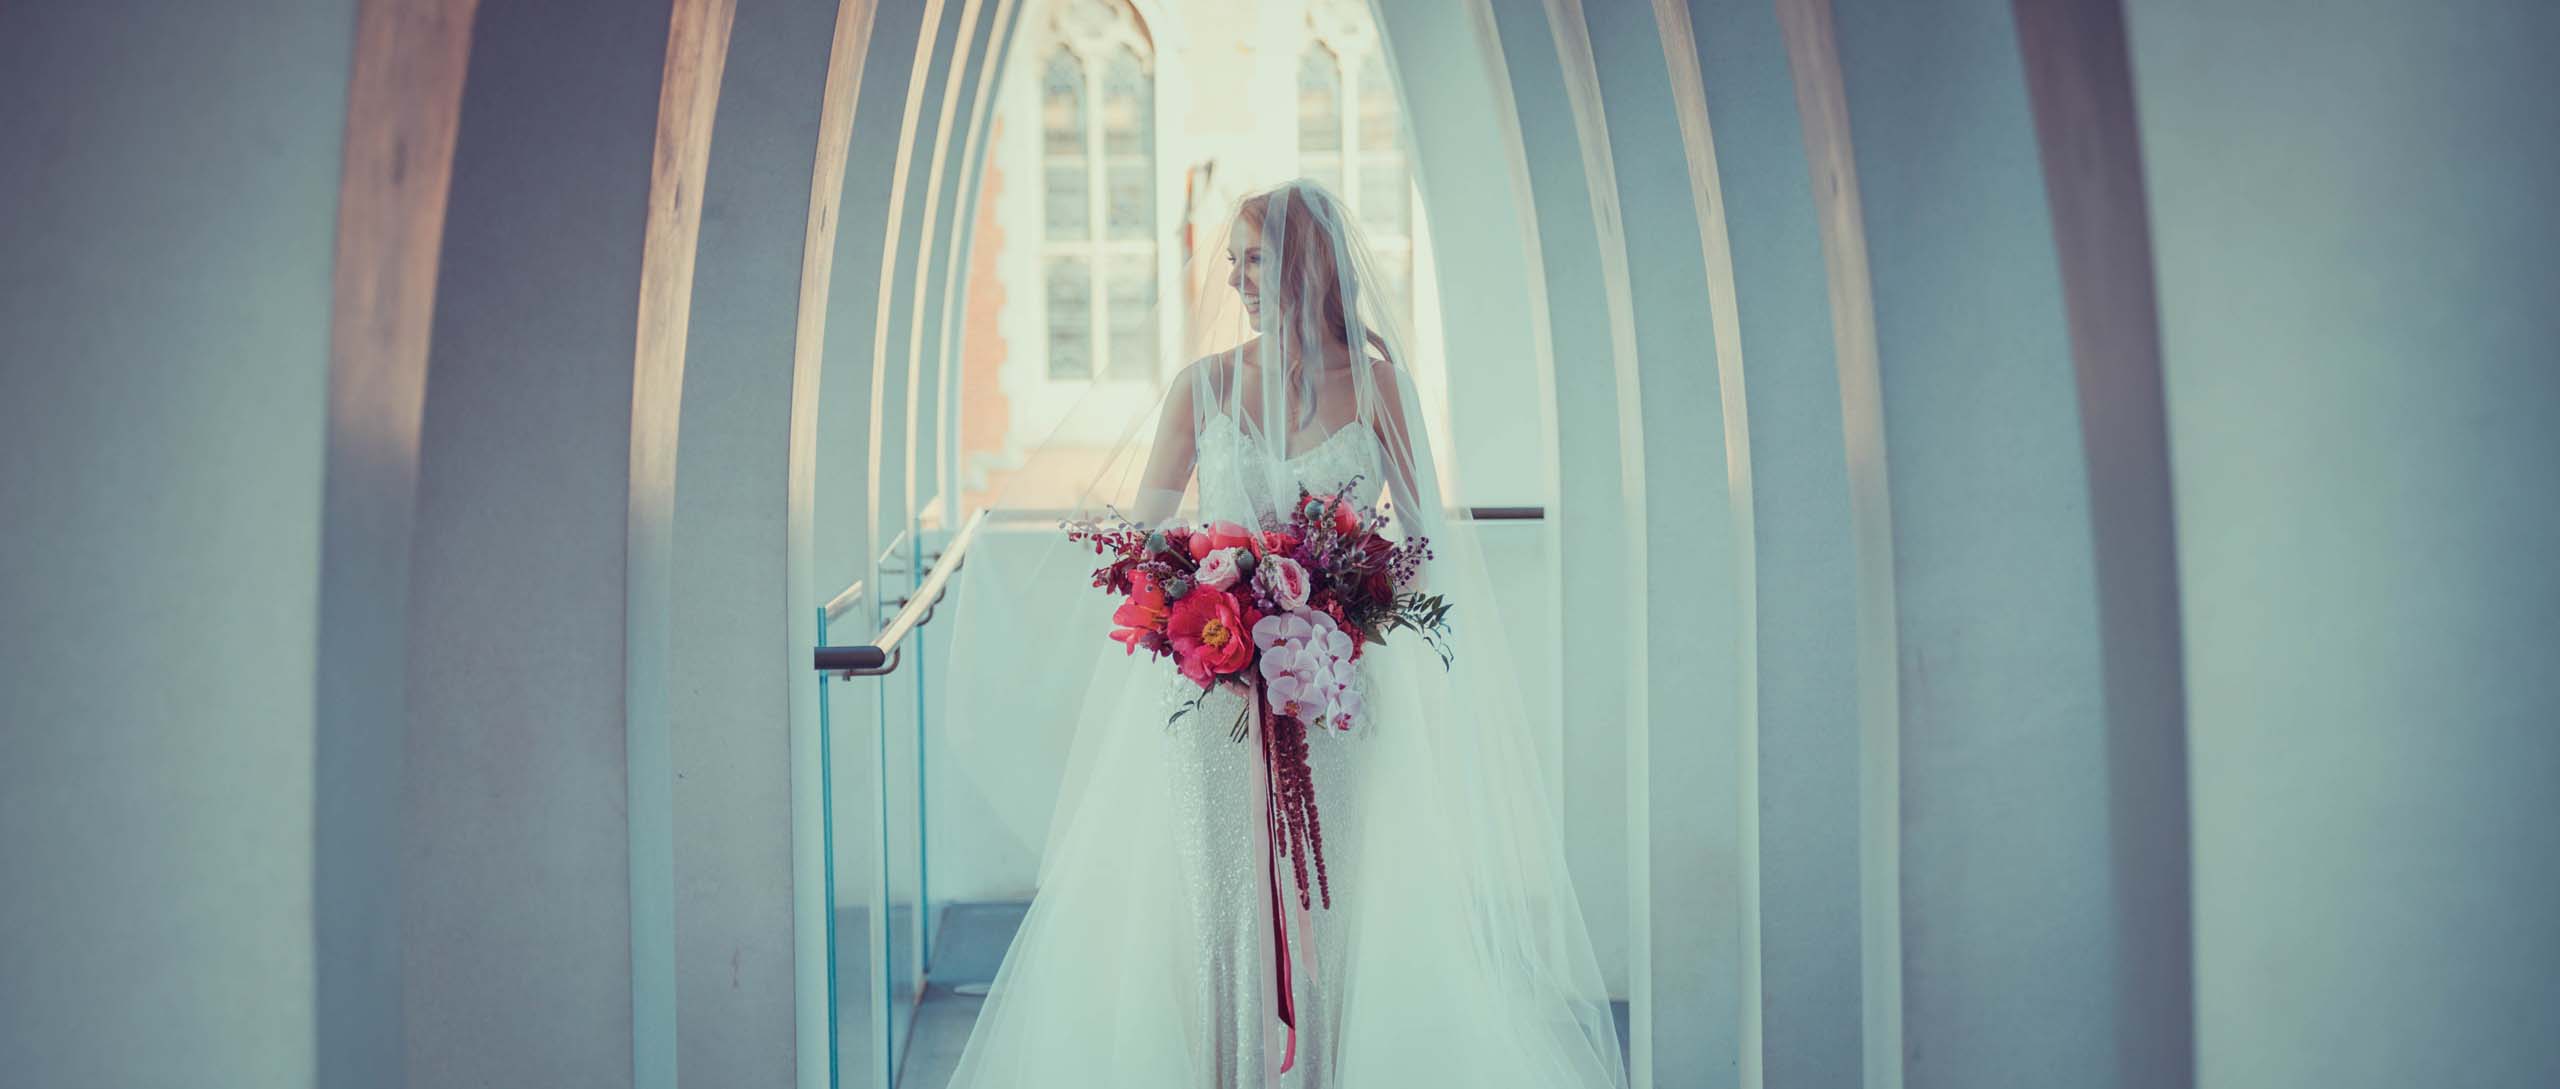 Lisa Wedding Arches